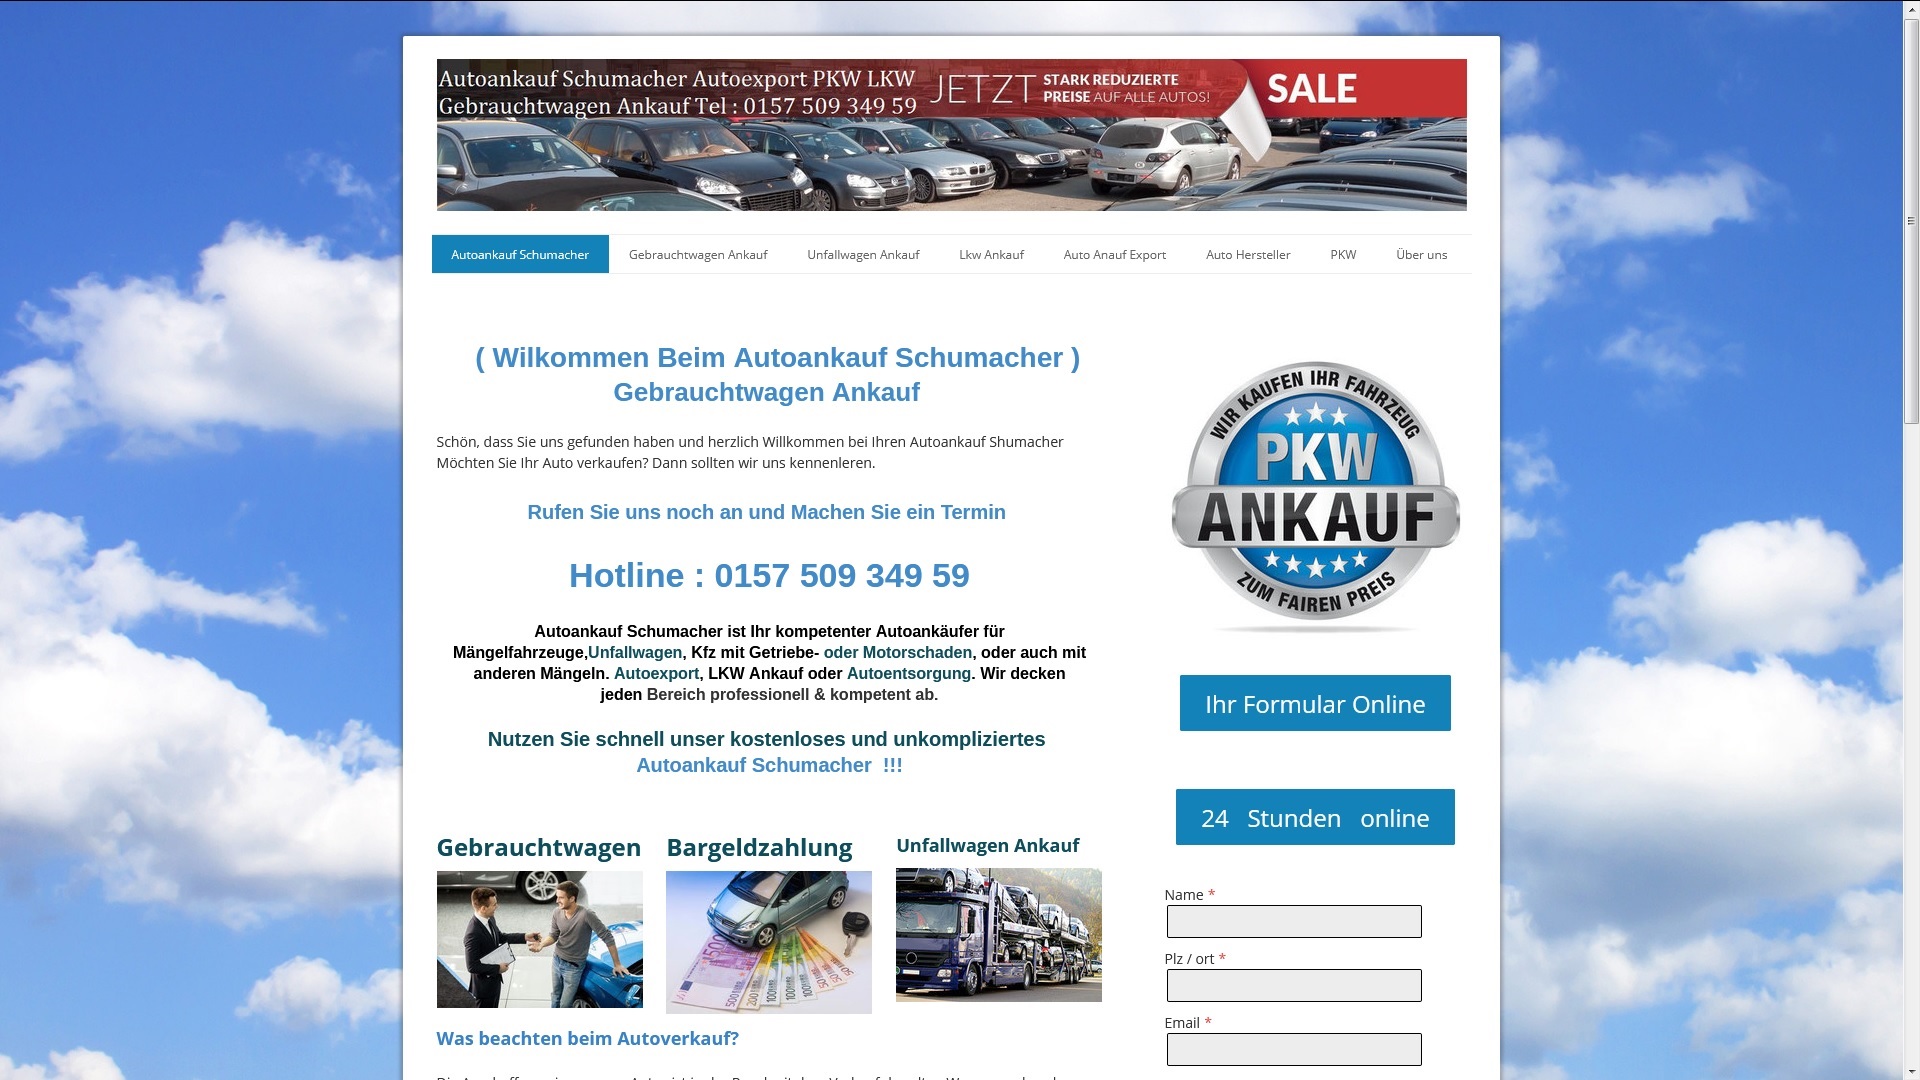 Autoankauf in Dortmund - Auto verkaufen in Dortmund